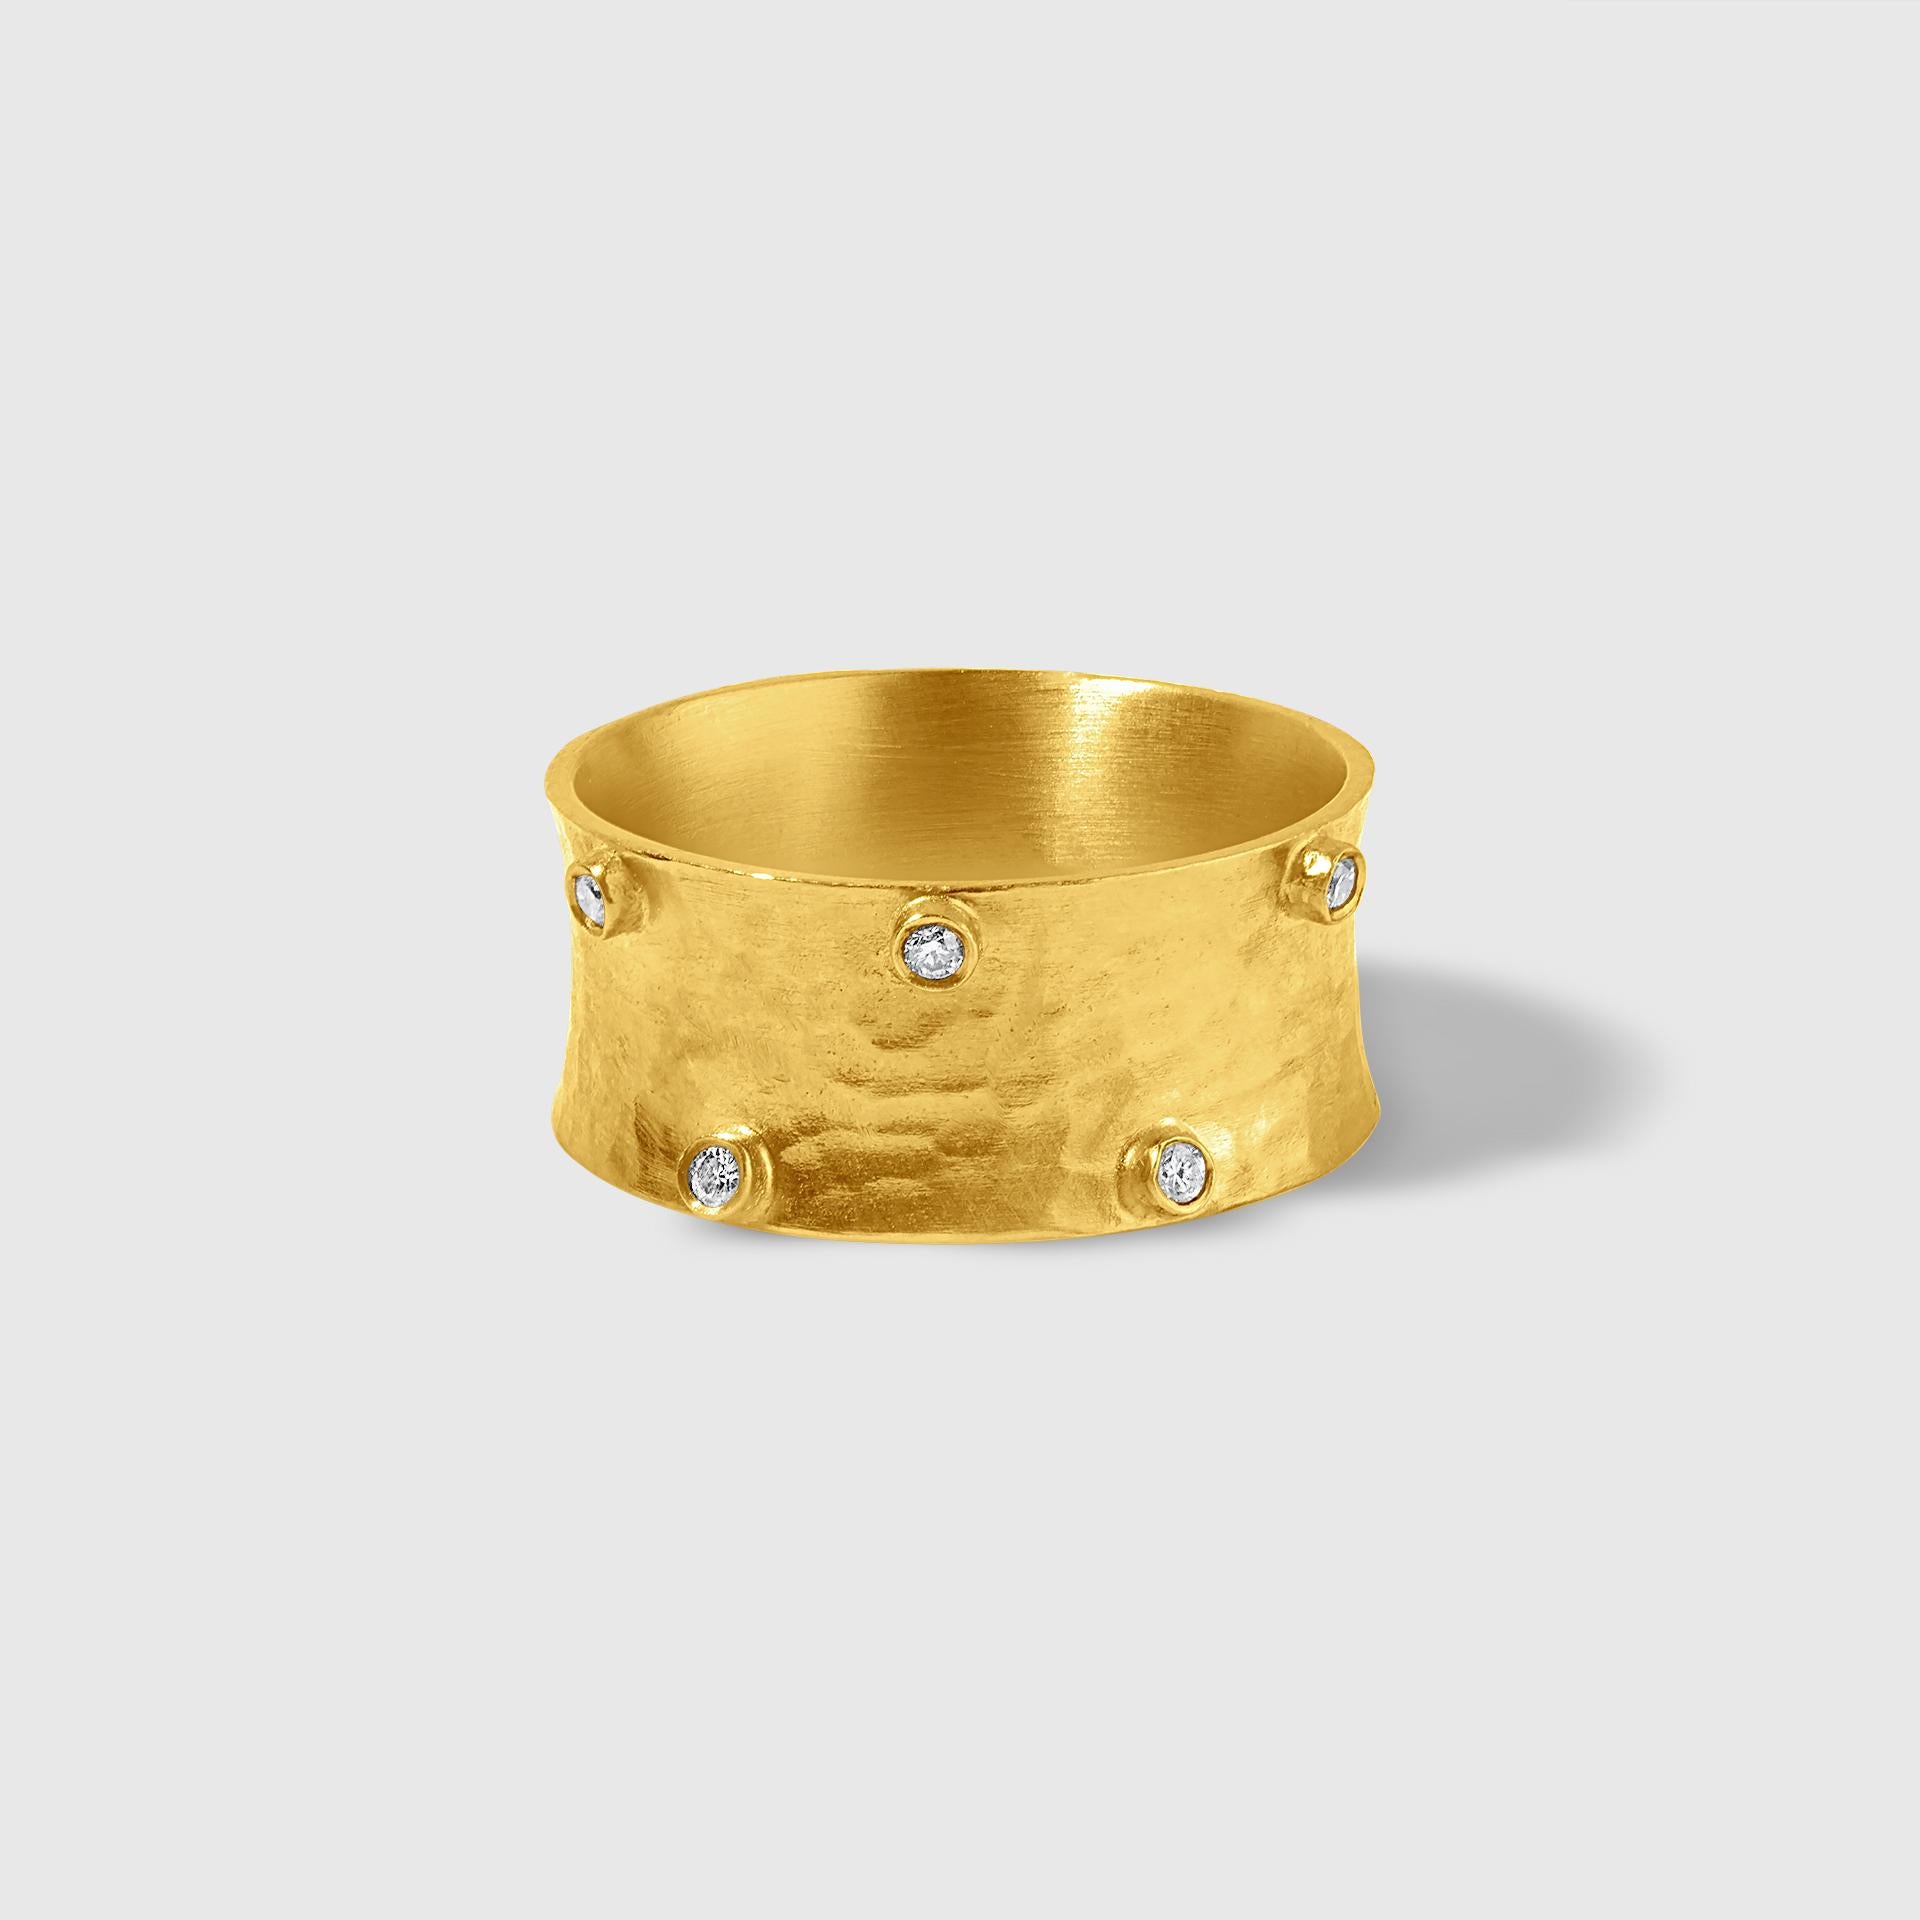 Taille ronde Anneau sculptural en or massif 22 carats, concave, ajusté et martelé, avec détails en vente